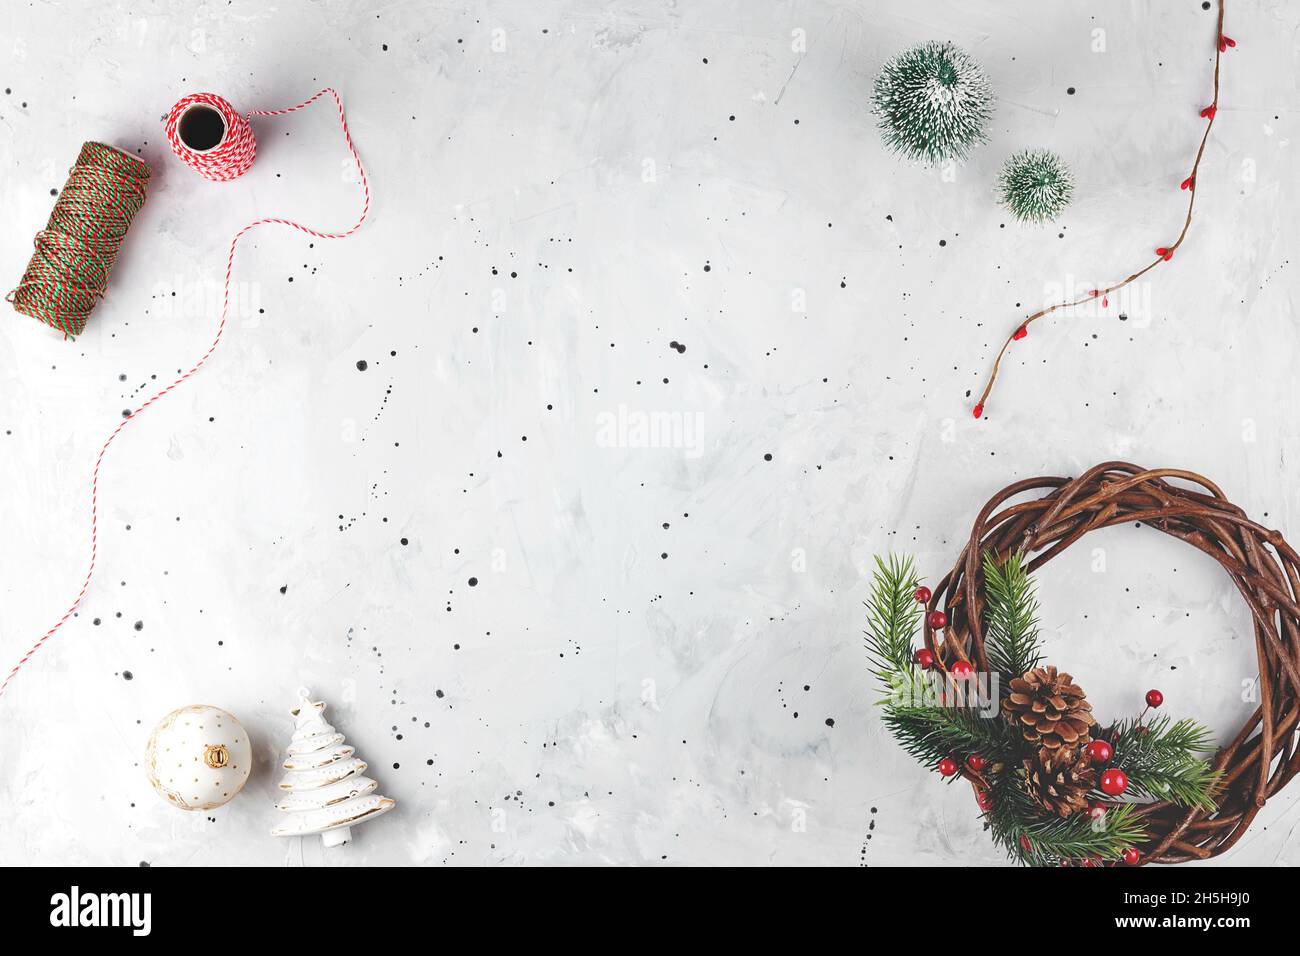 Fond de Noël gris avec décor, couronne et boules d'arbre de Noël. Arrière-plan de l'espace de copie de la mise à plat Banque D'Images